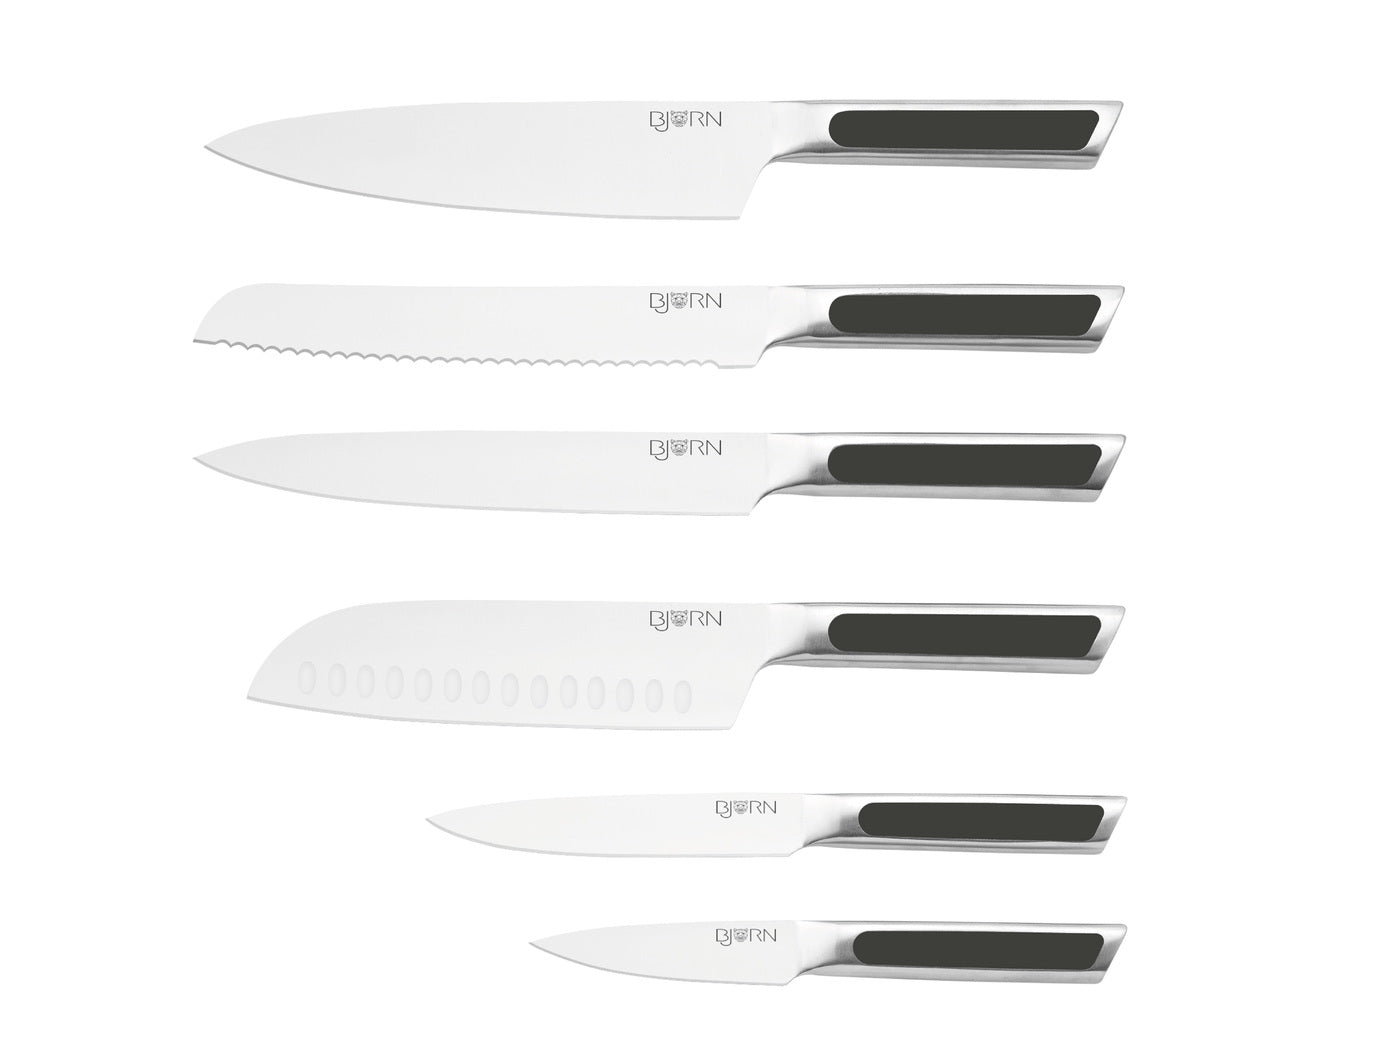 Couteaux de cuisine LOKI - 6 pièces